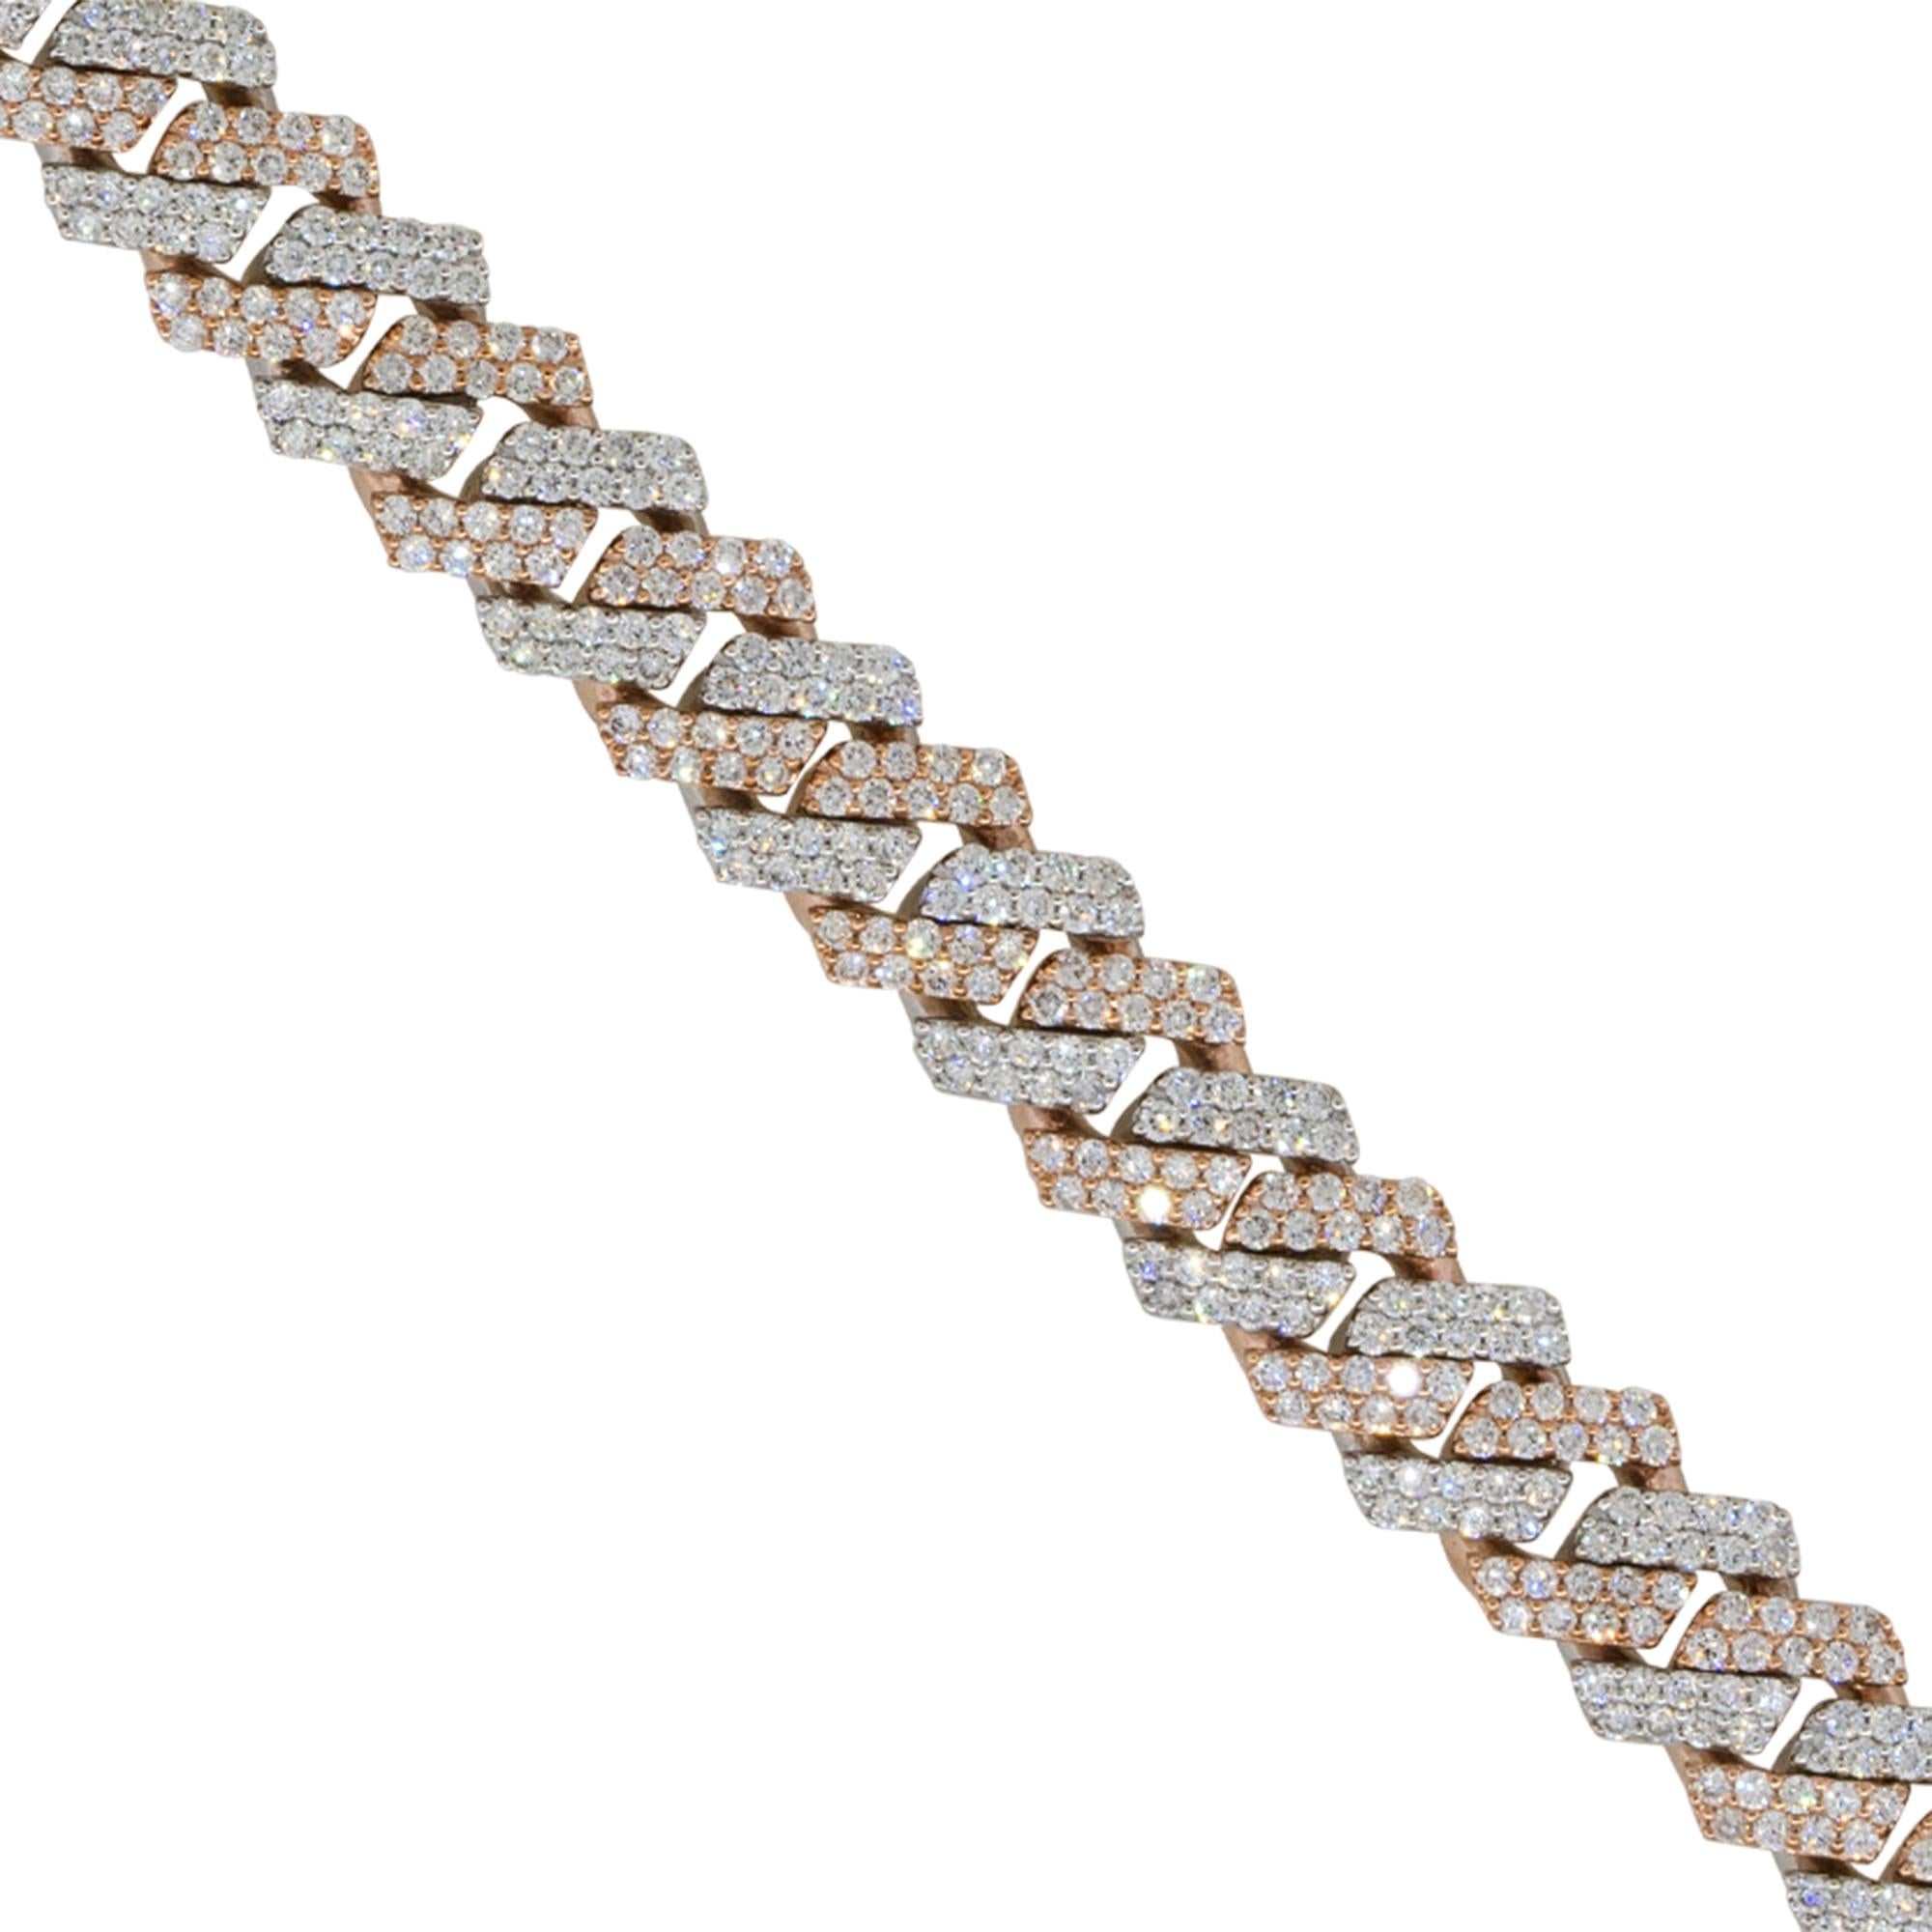 MATERIAL: 10k Weißgold, 10k Roségold
Diamant-Details: Ca. 7,57ctw von rund geschliffenen Diamanten. Die Diamanten haben eine Farbe von G/H und eine Reinheit von VS. 575 Steine 
Verschluss: Zunge in Box mit doppelter Sicherheitsverriegelung
Maße: